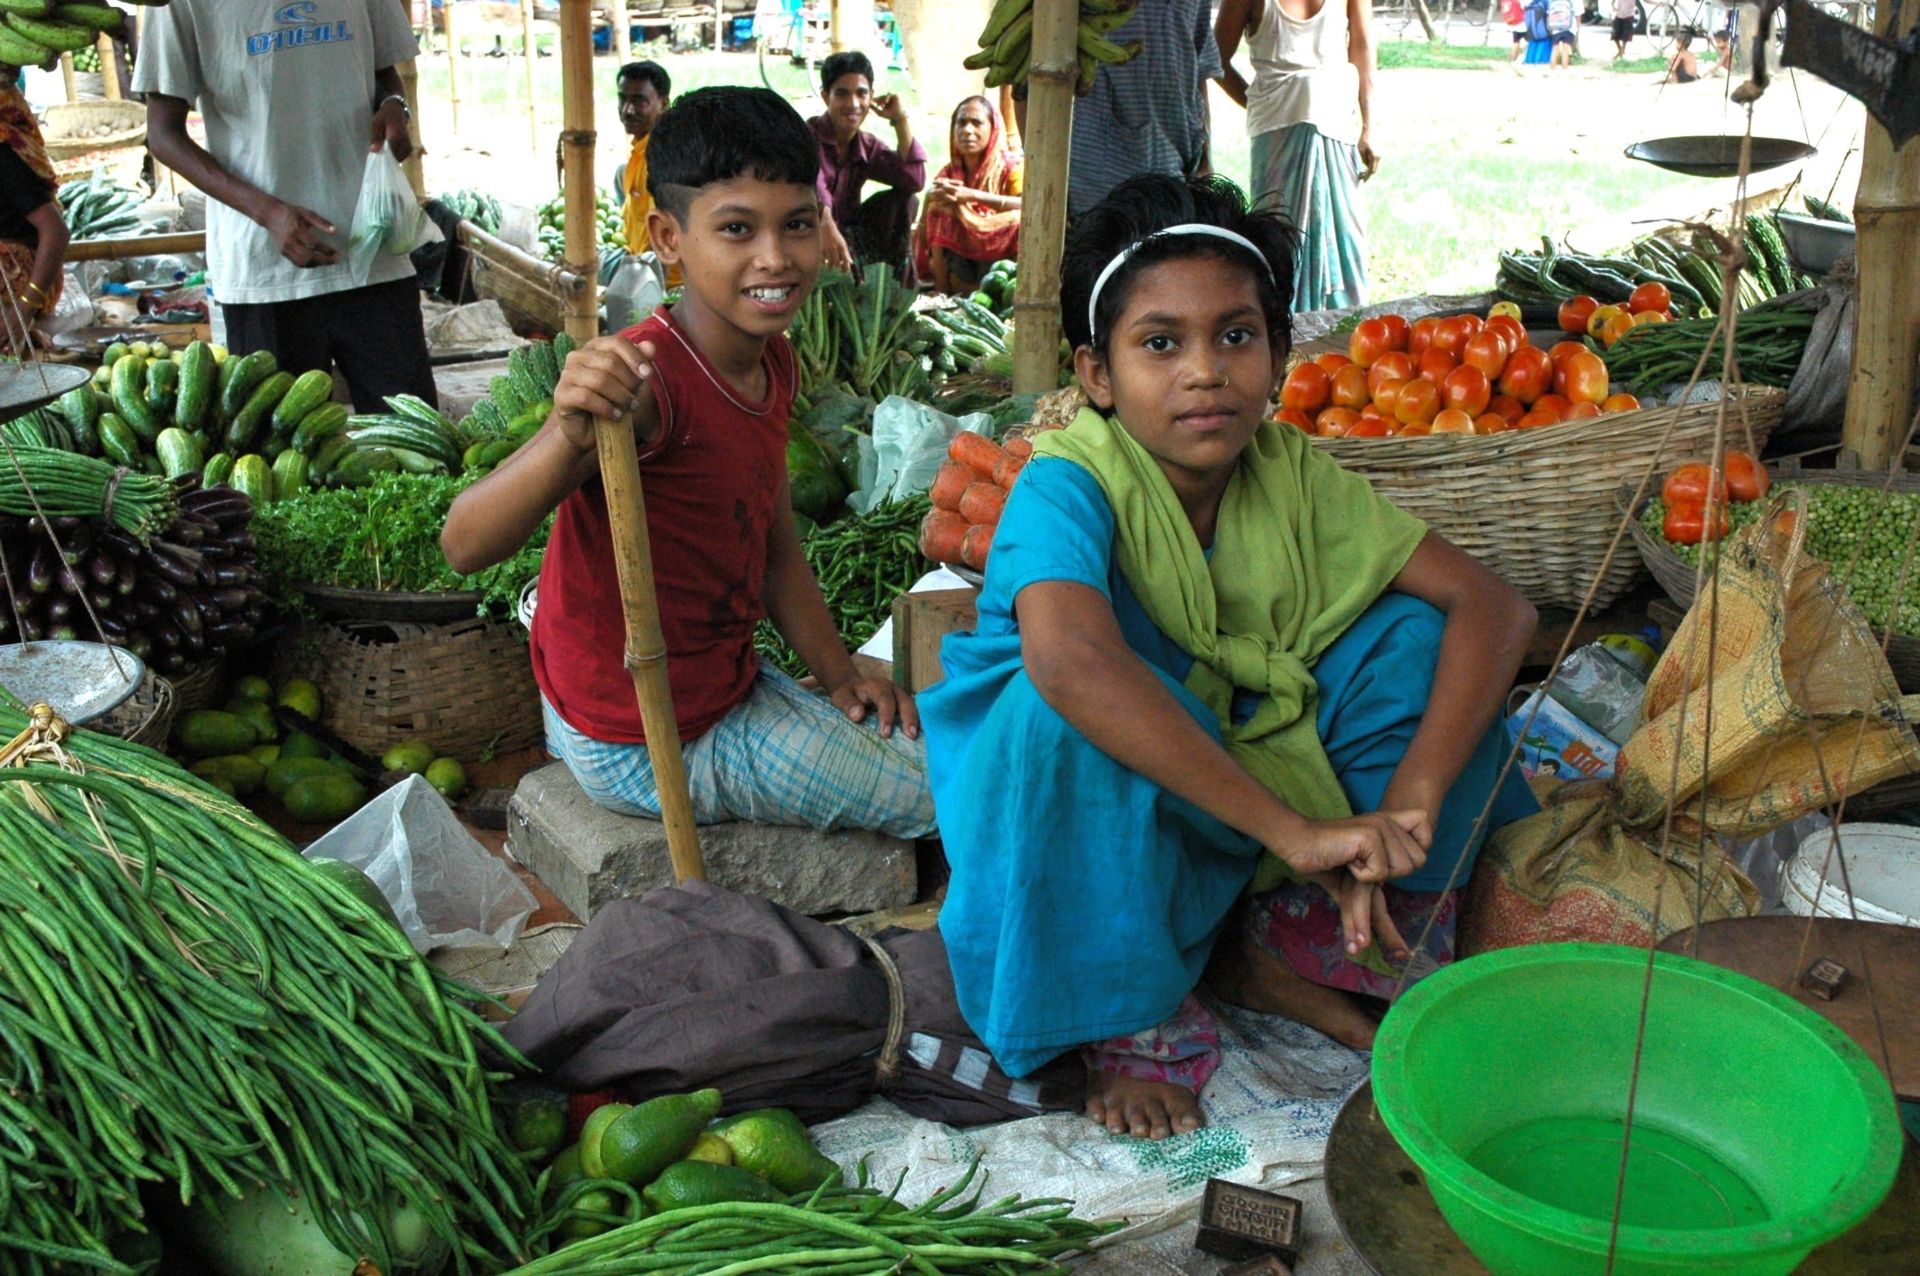 Children in Market